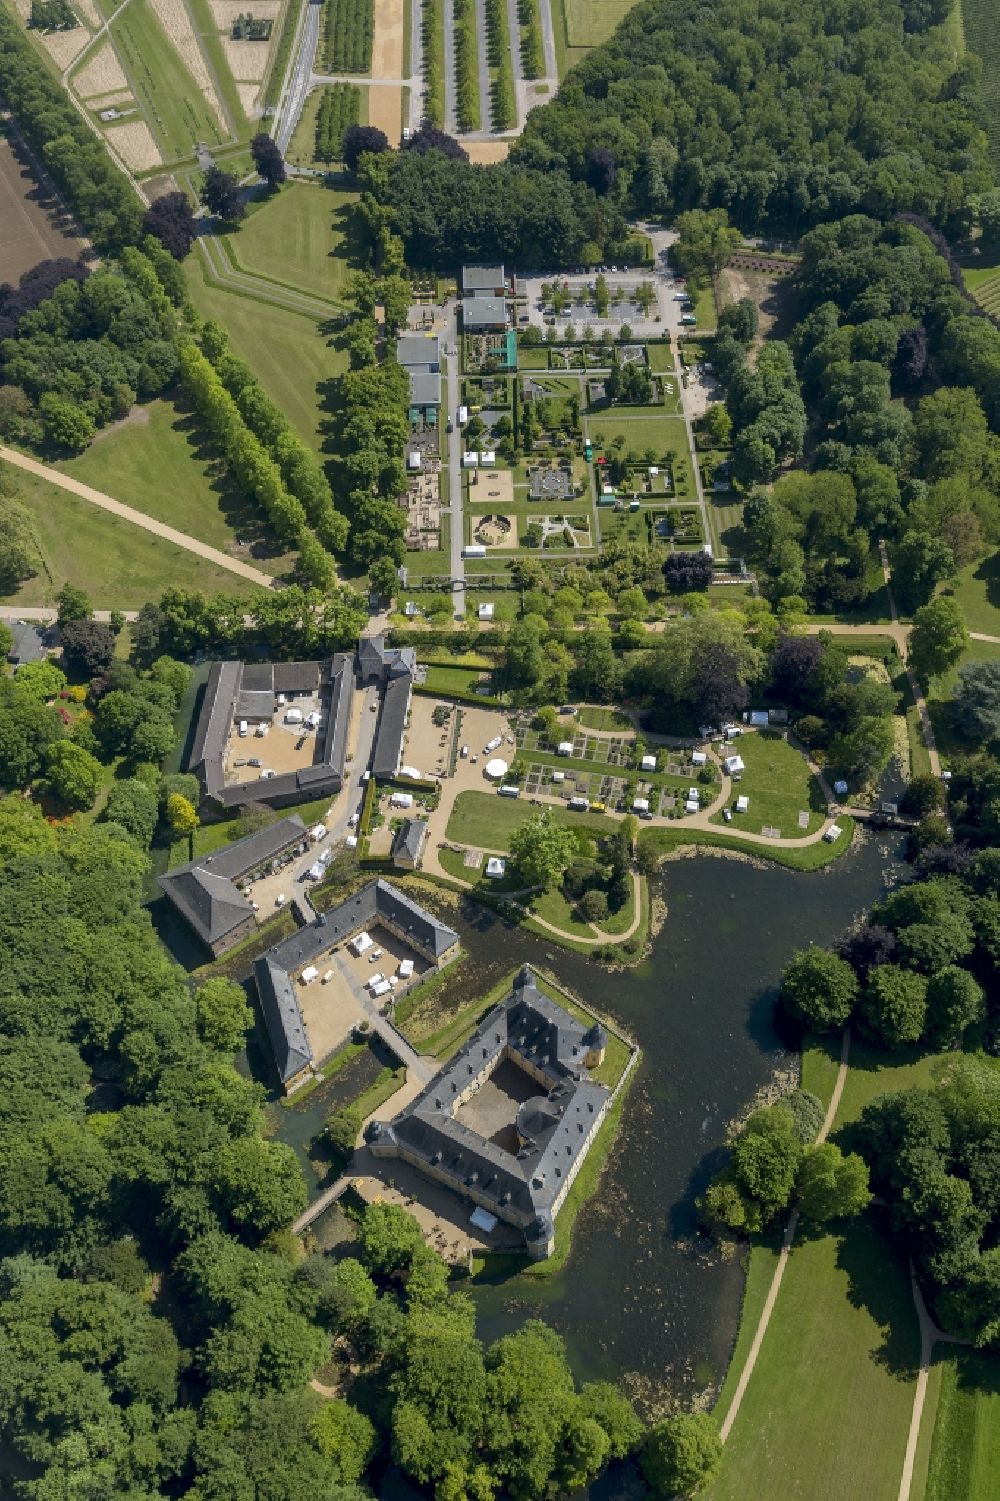 Luftbild Jüchen - Gelände von Schloss Dyck in Jüchen in Nordrhein-Westfalen